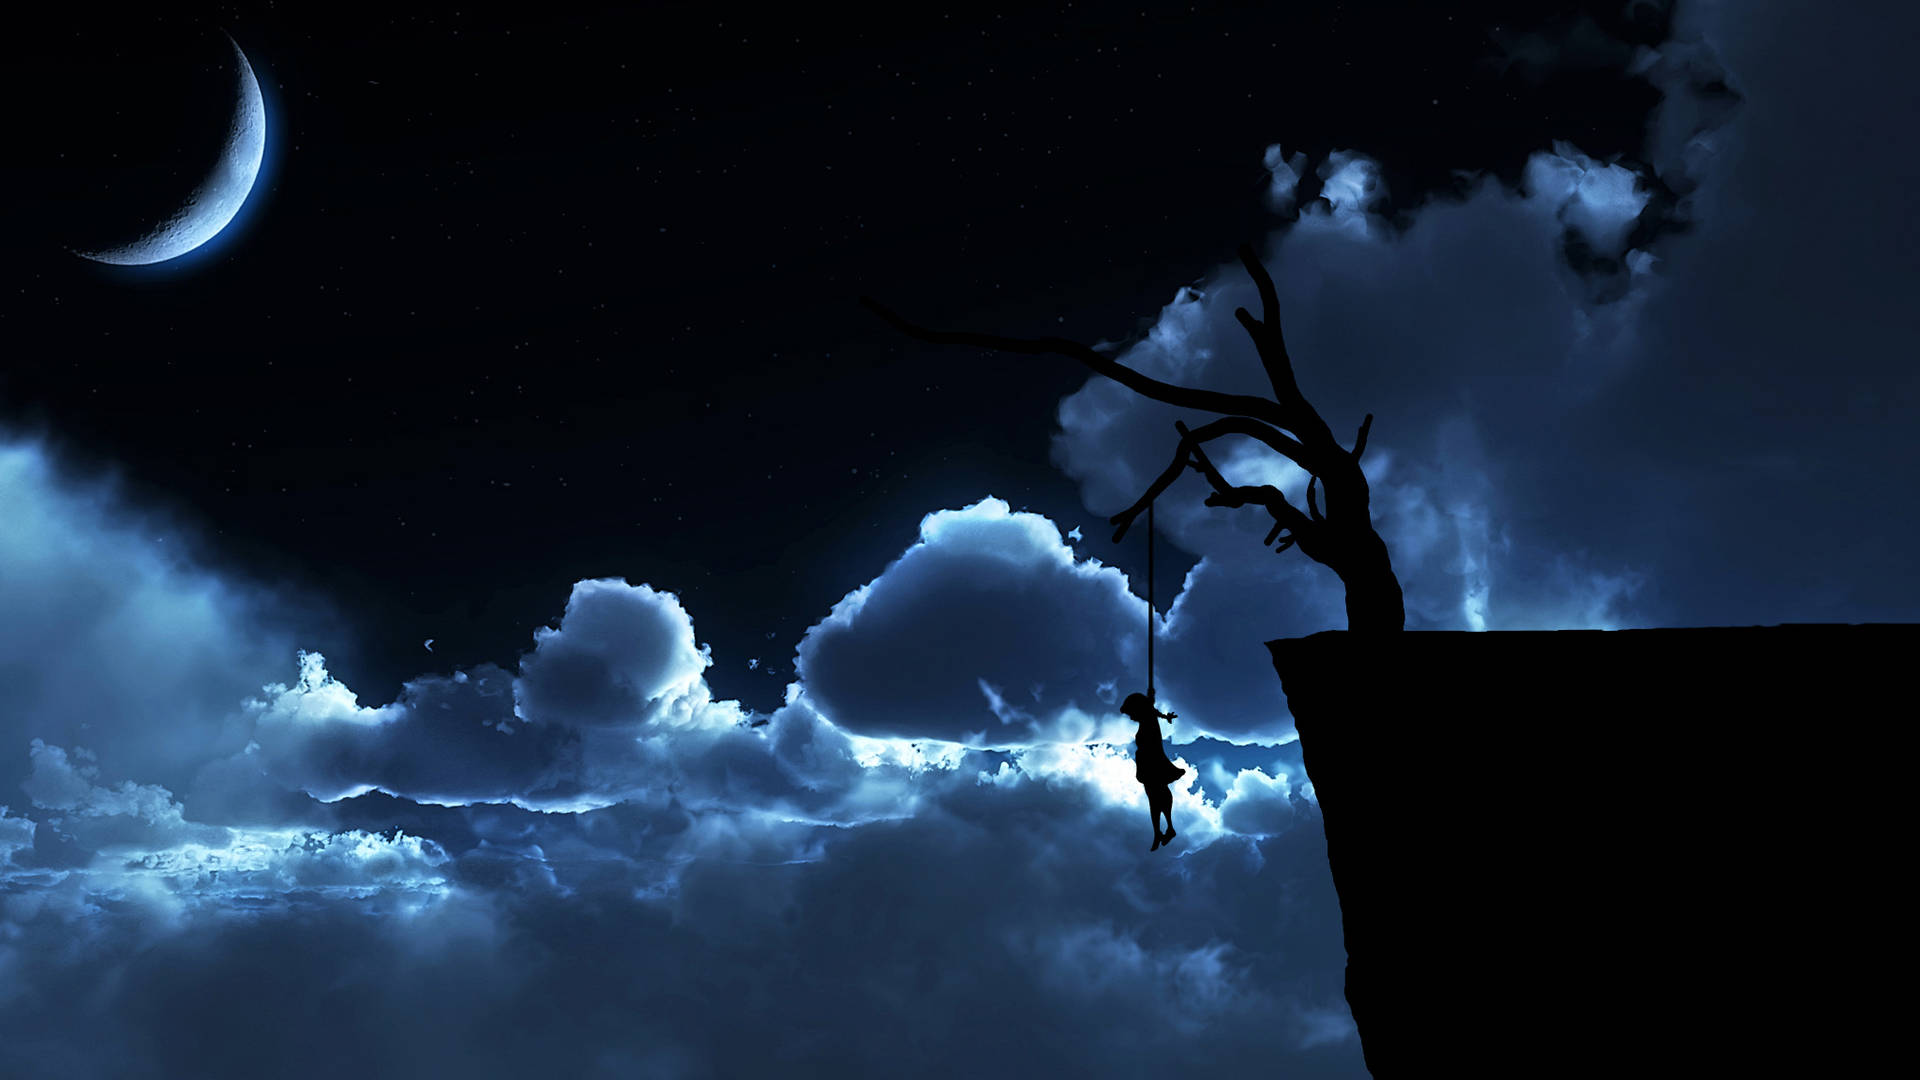 Sad Night Sky Picture